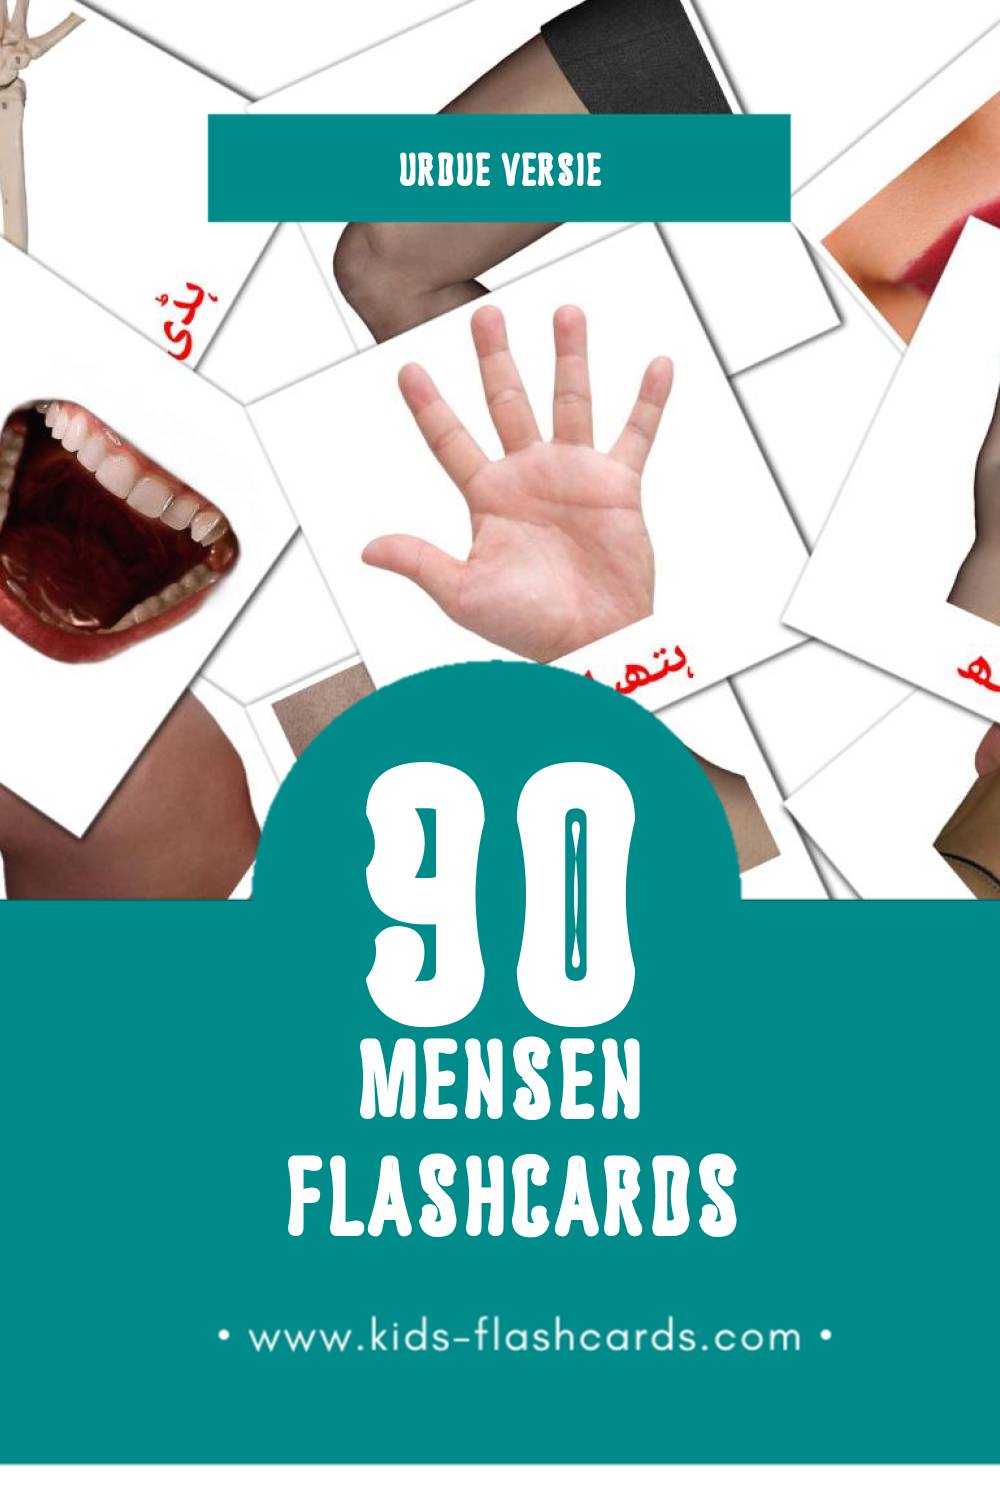 Visuele لوگ Flashcards voor Kleuters (90 kaarten in het Urdu)